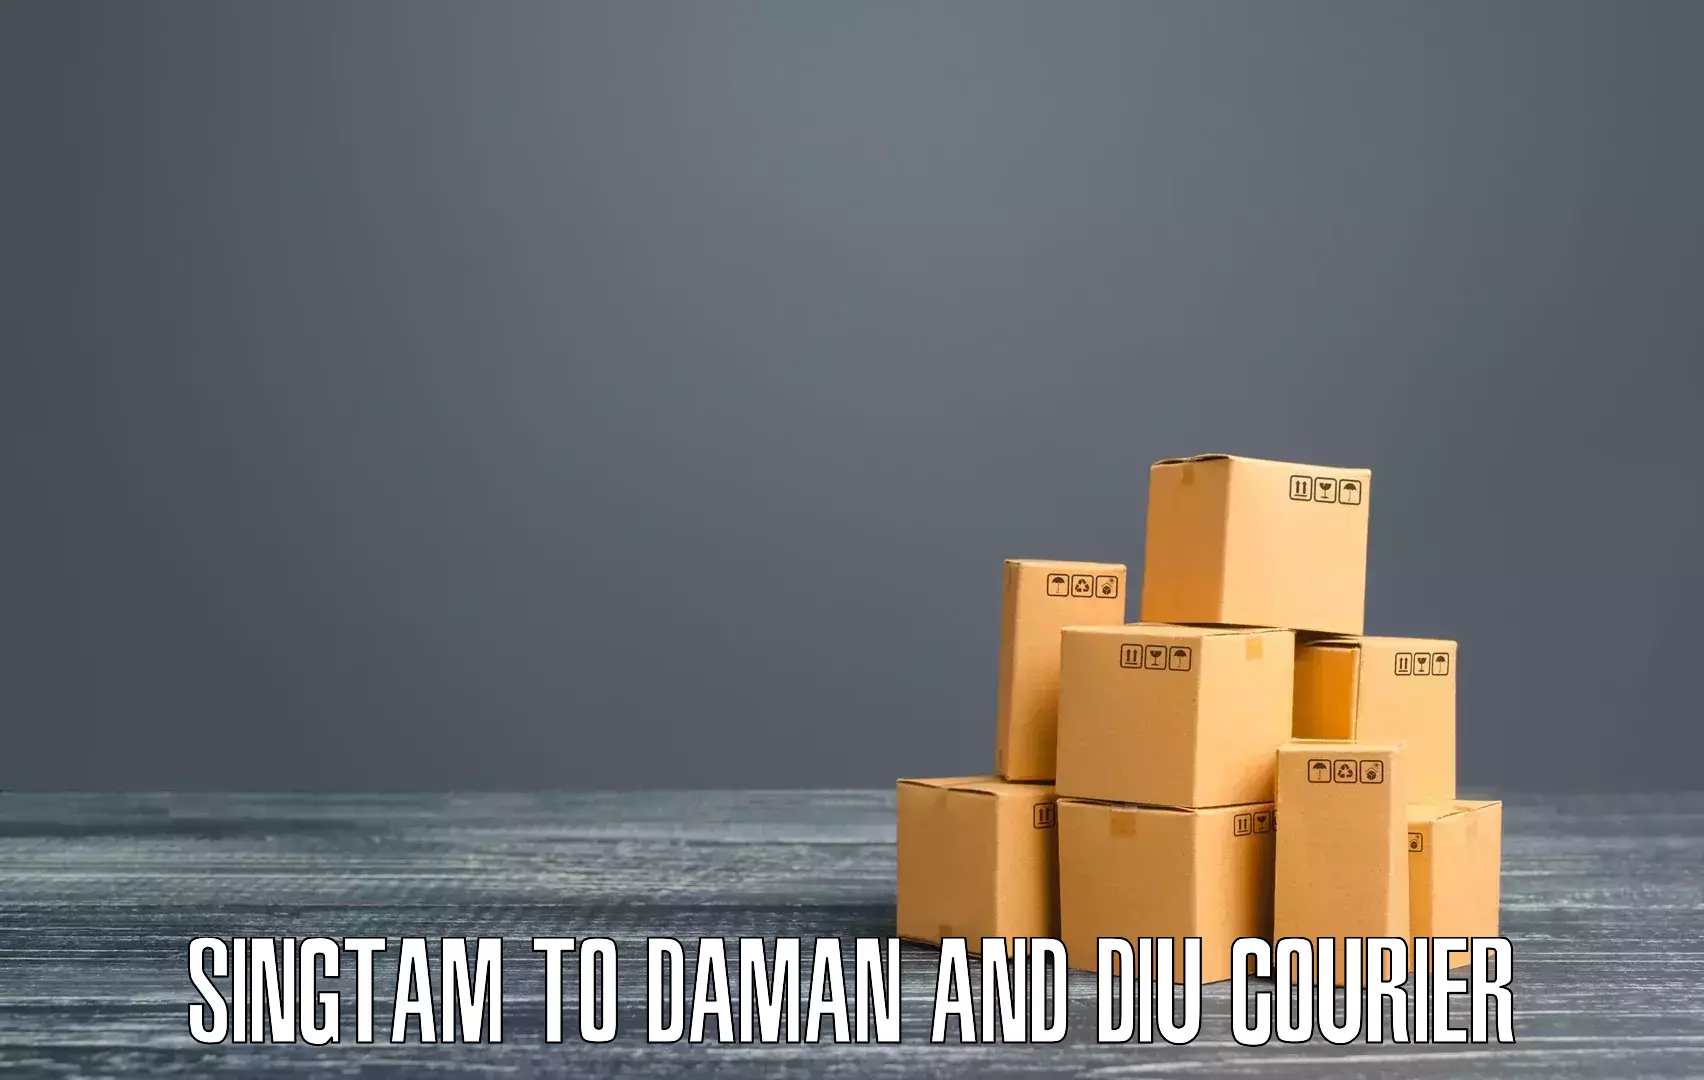 Efficient freight transportation Singtam to Daman and Diu